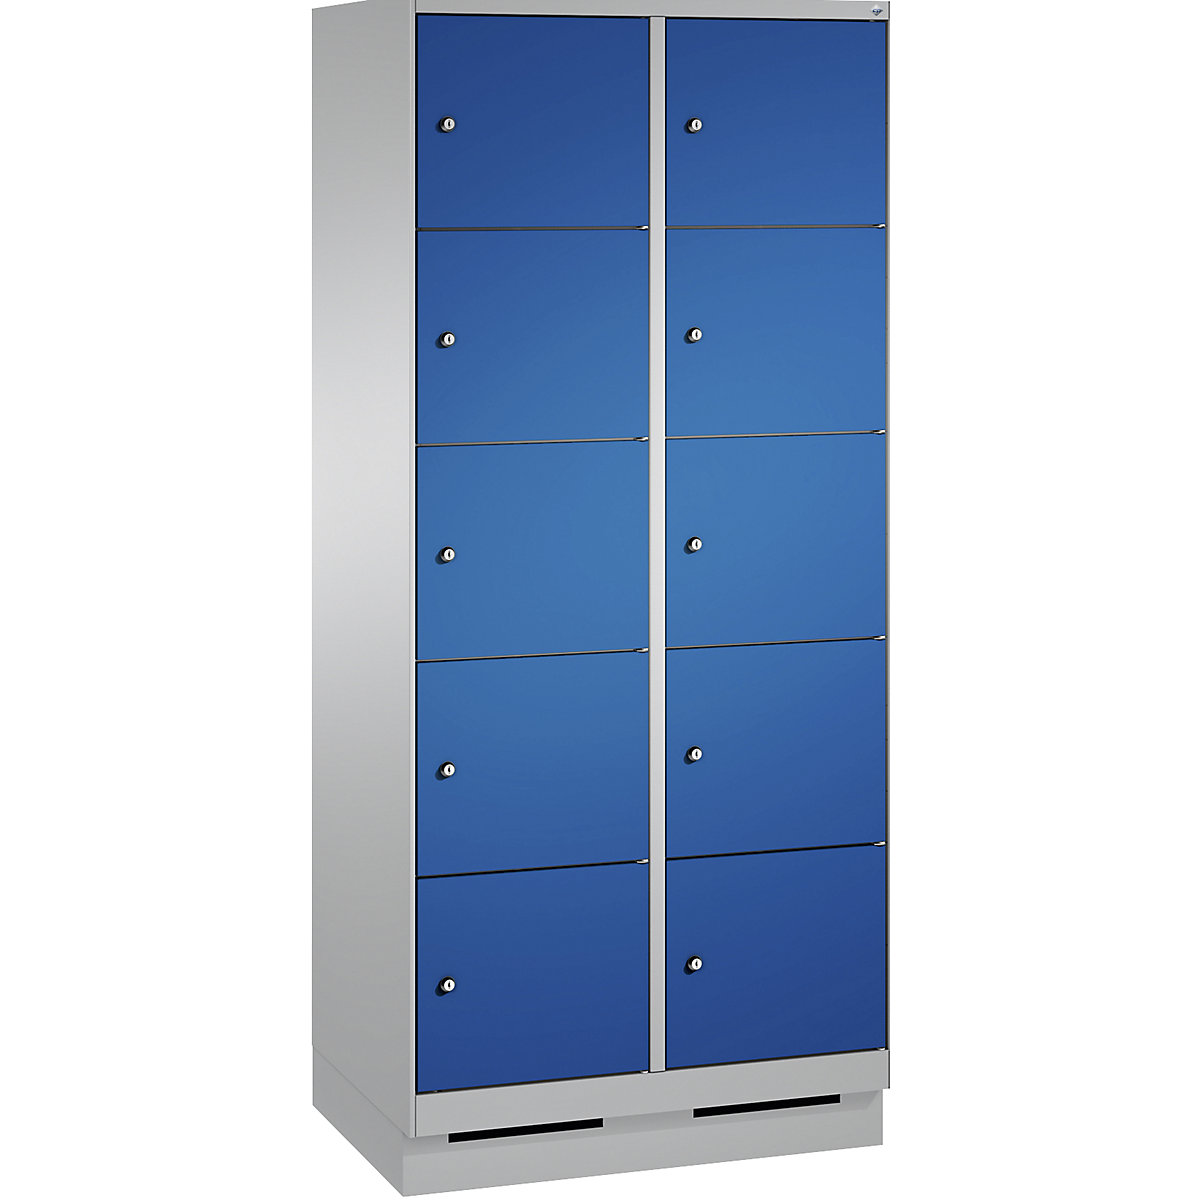 Armoire à casiers sur socle EVOLO – C+P, 2 compartiments, 5 casiers chacun, largeur compartiments 400 mm, aluminium / bleu gentiane-11